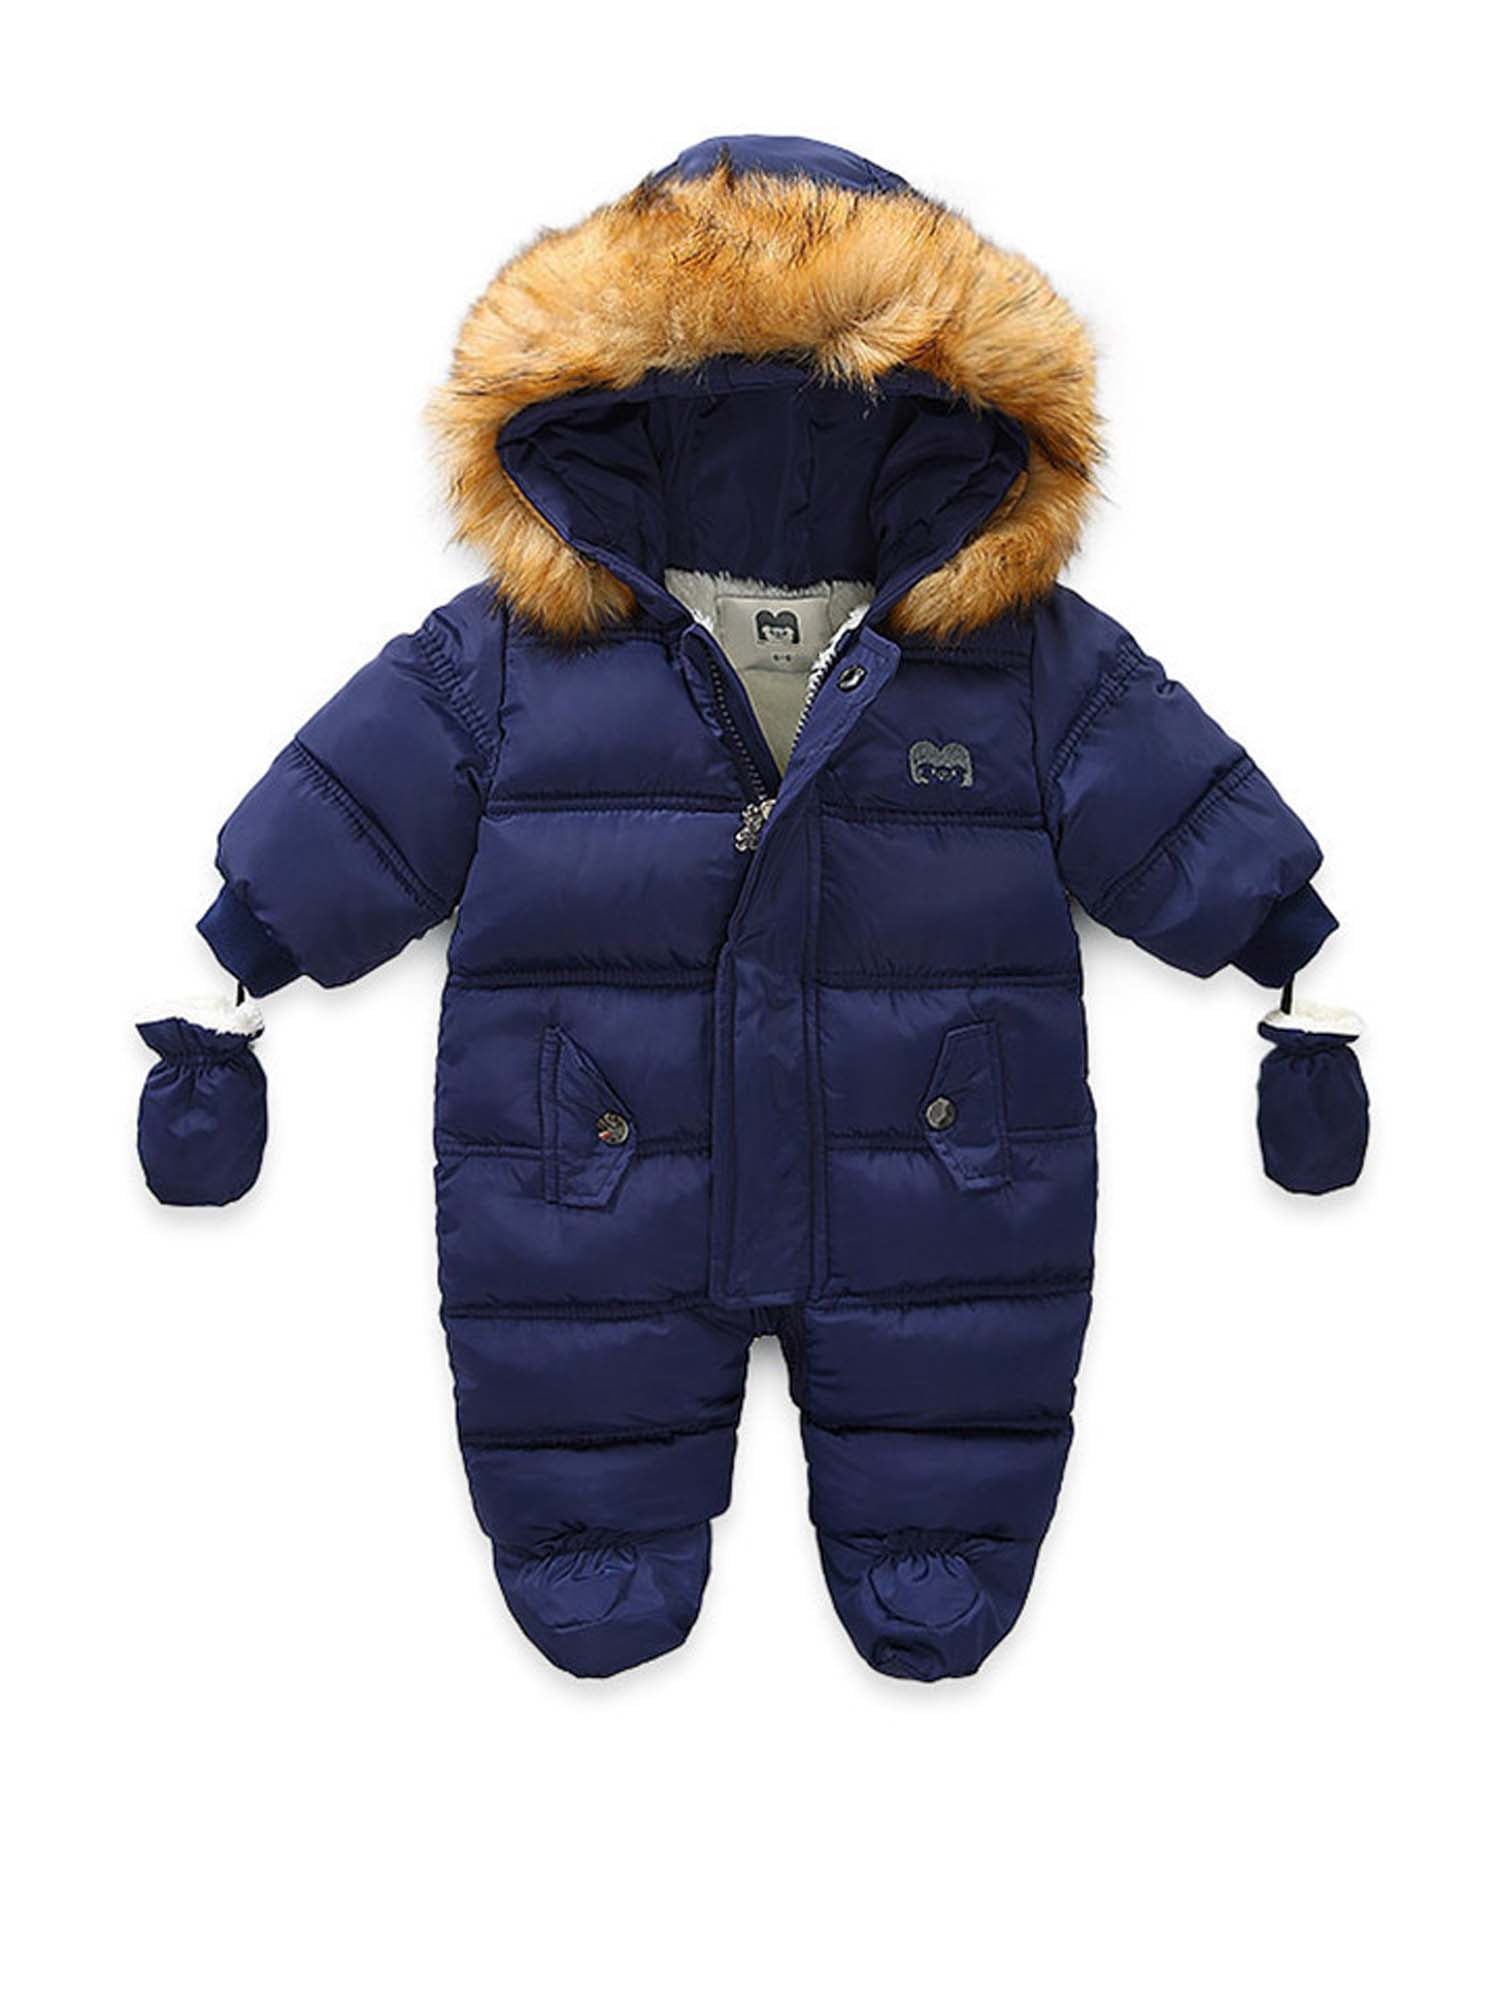 Bestgift Unisex Baby Winter Snowsuit Toddler Hoodied Footie Romper Outwear Coat